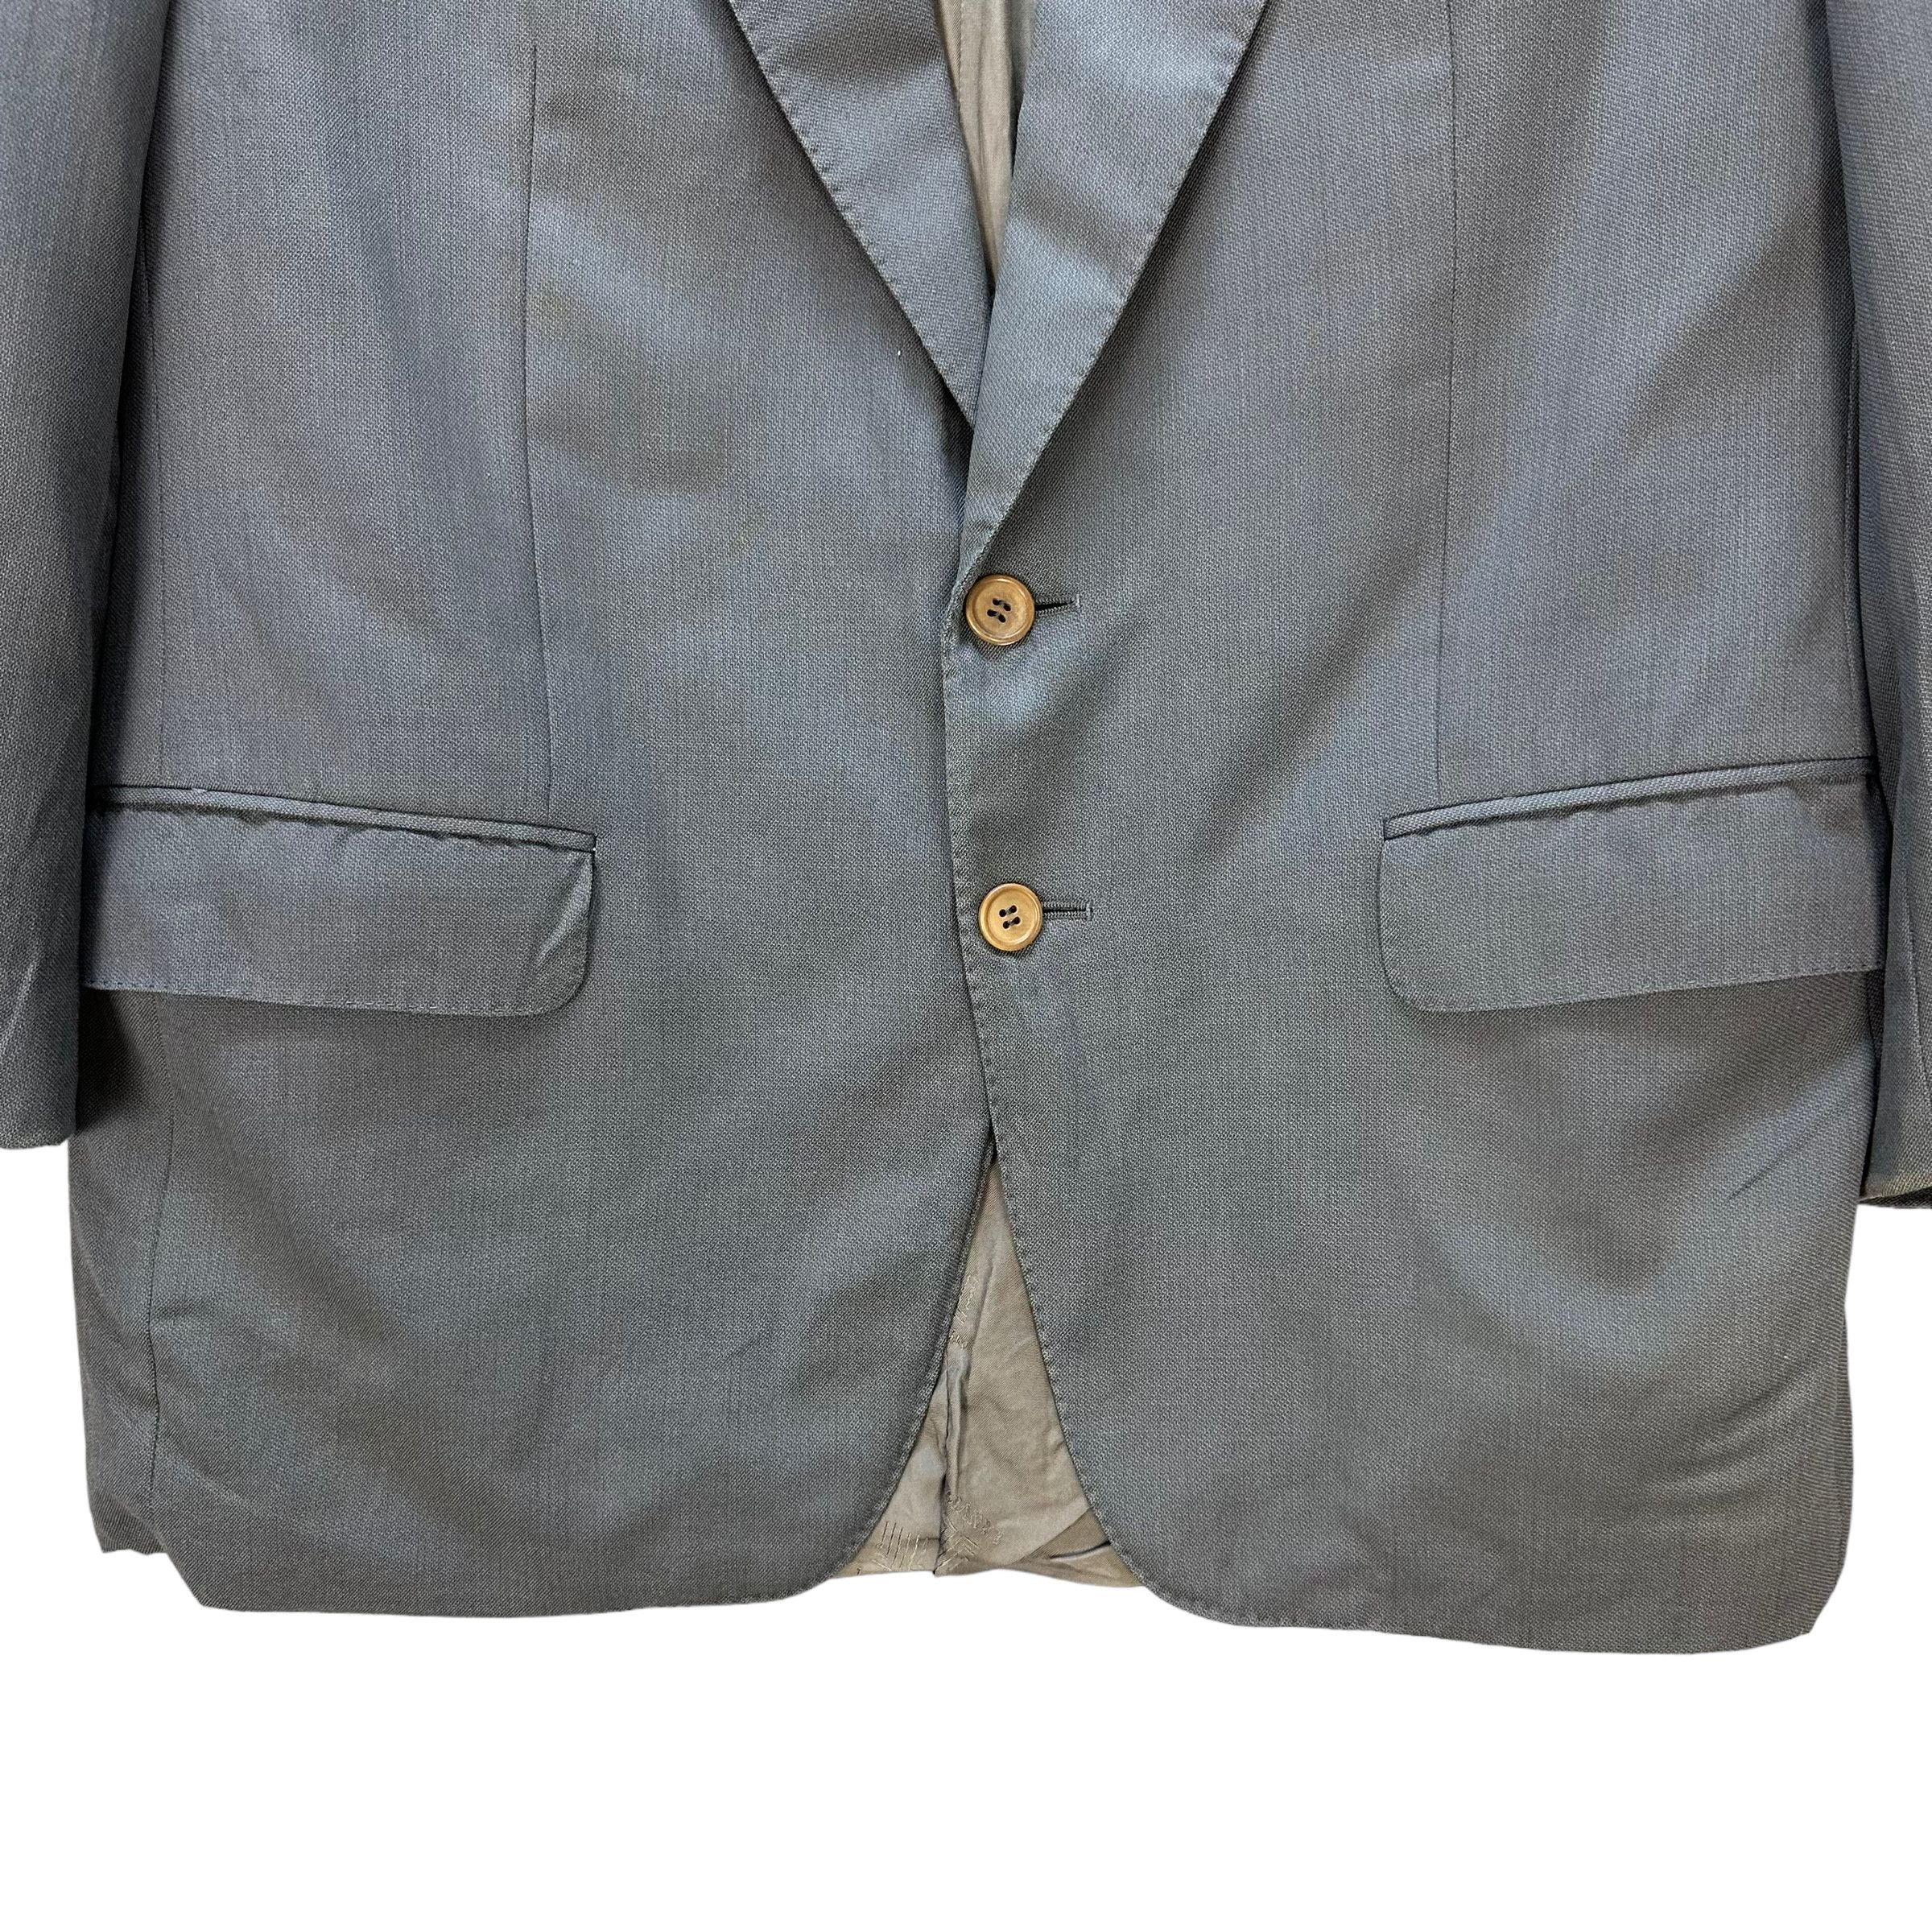 Lanvin Paris Suit Jacket / Blazer #9139-61 - 3